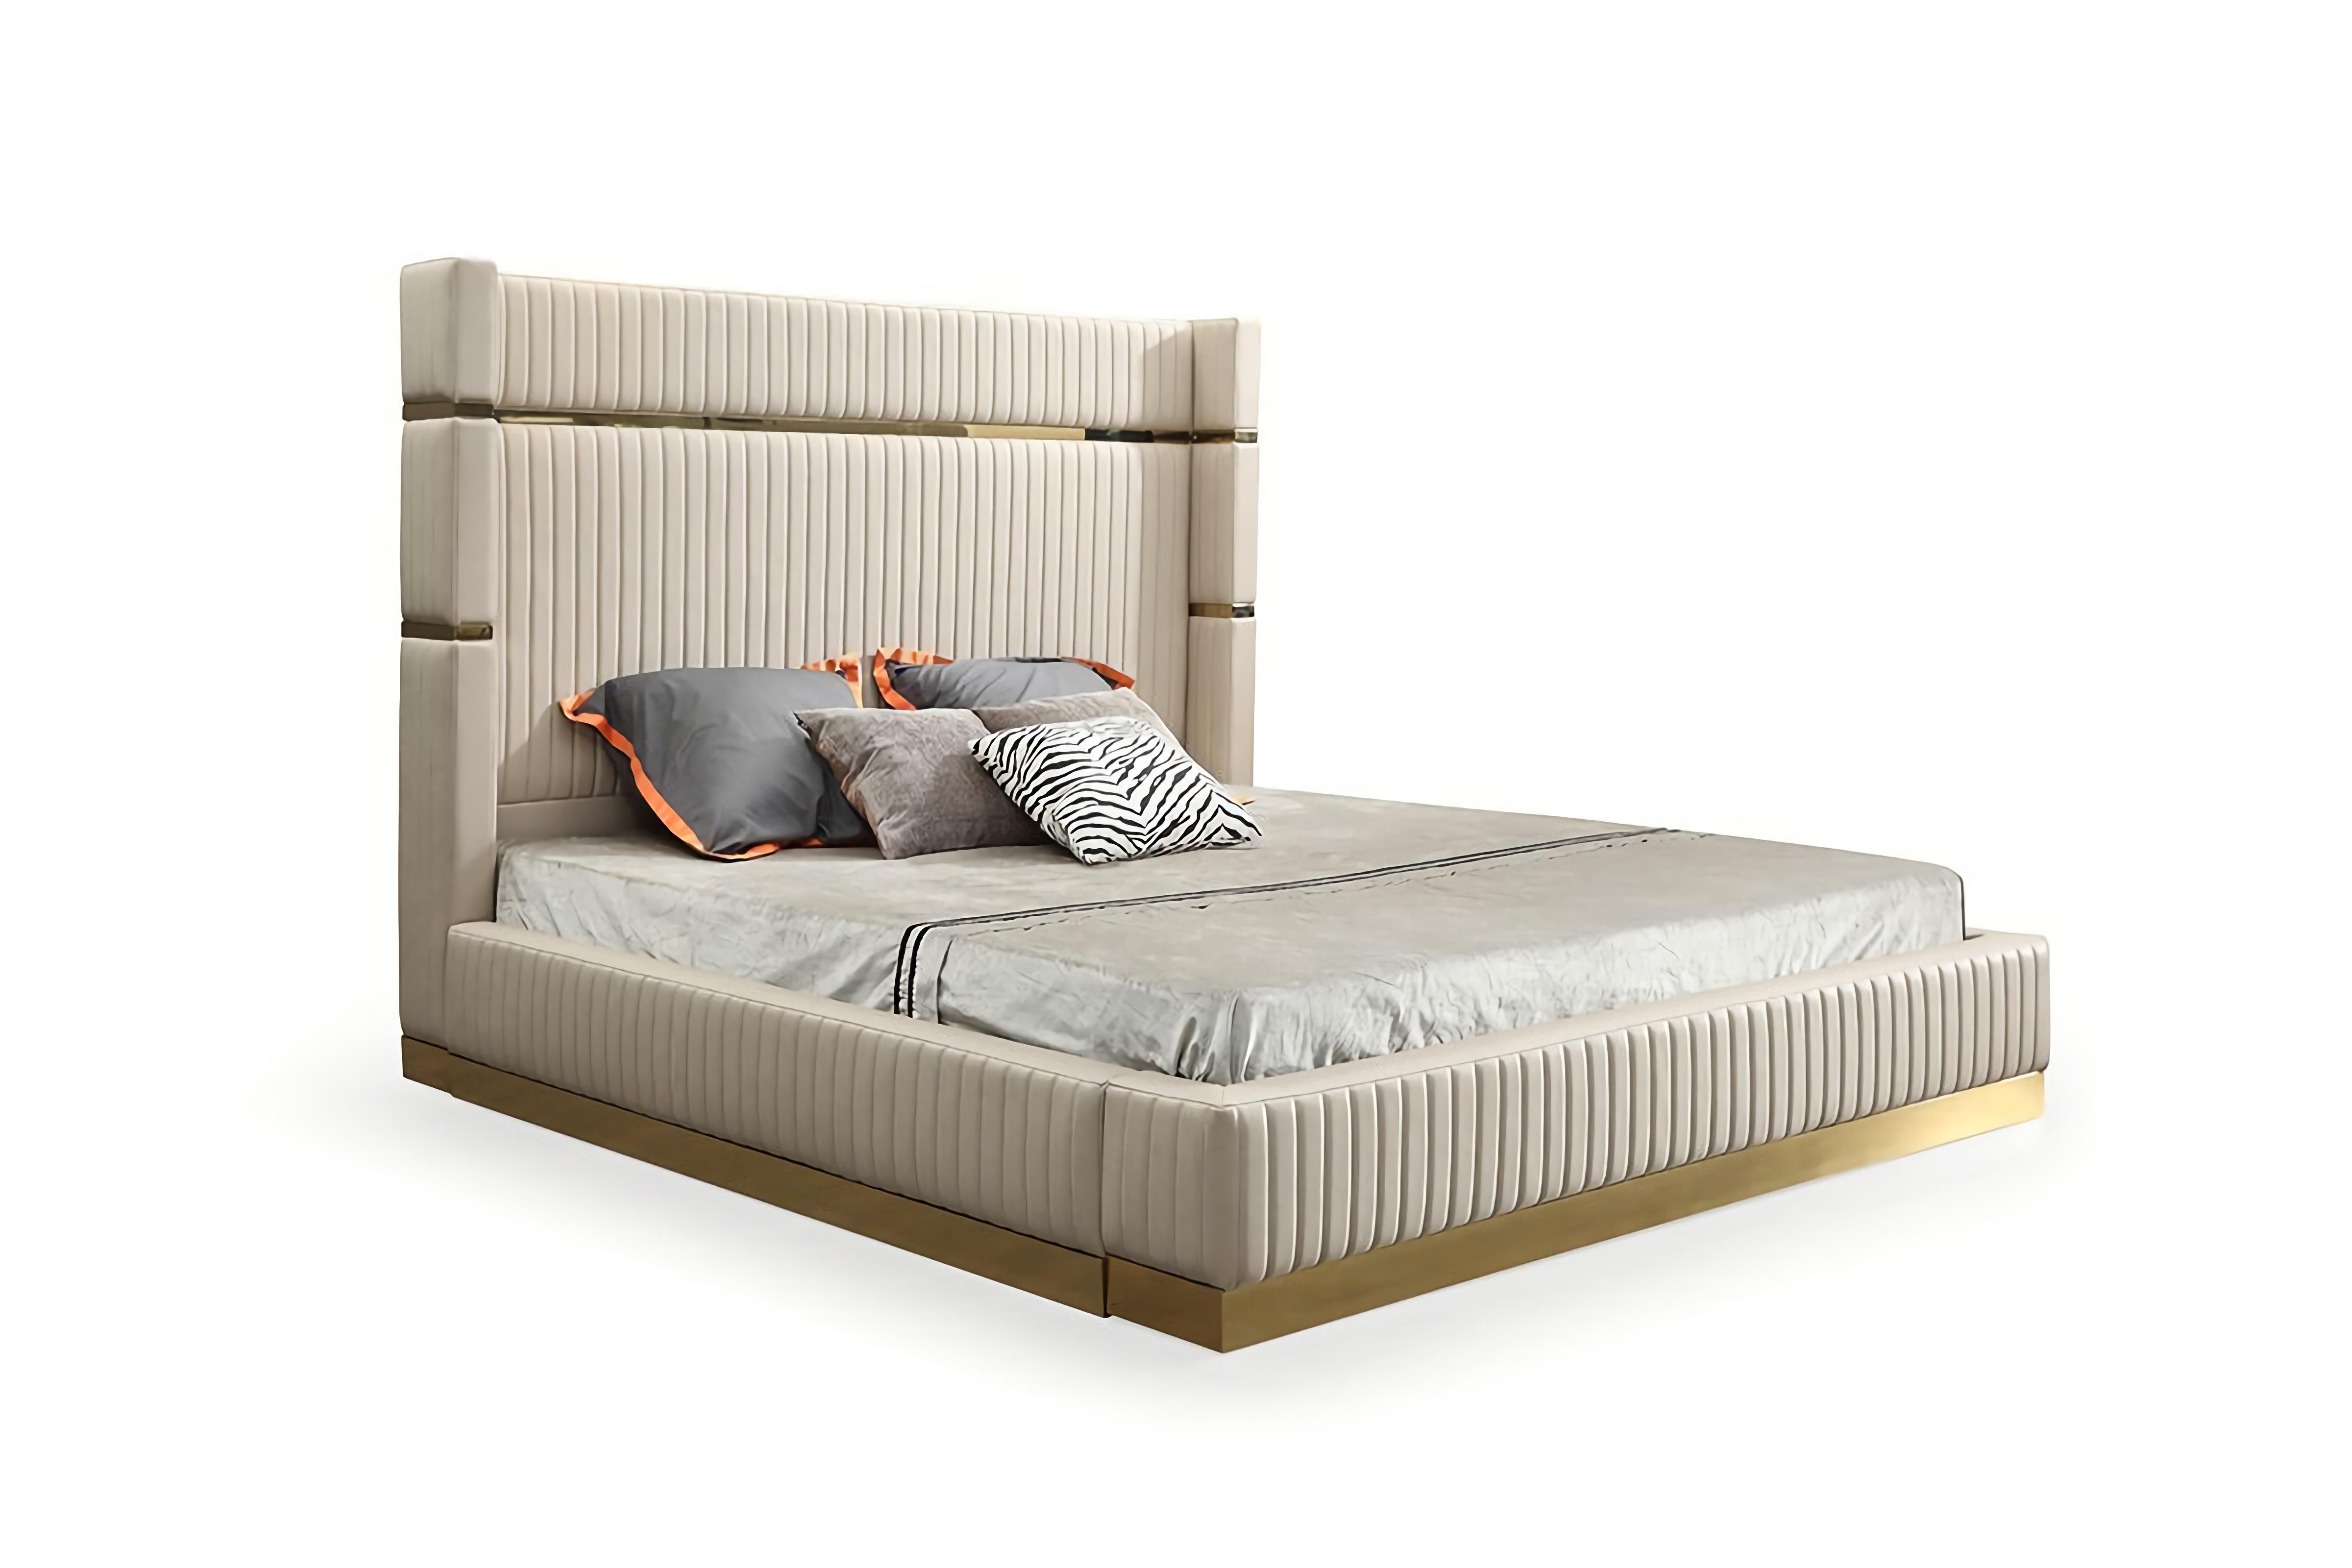 

    
Glam Beige Leather & Gold Eastern King Size Platform Bed by Modrest Sterling
